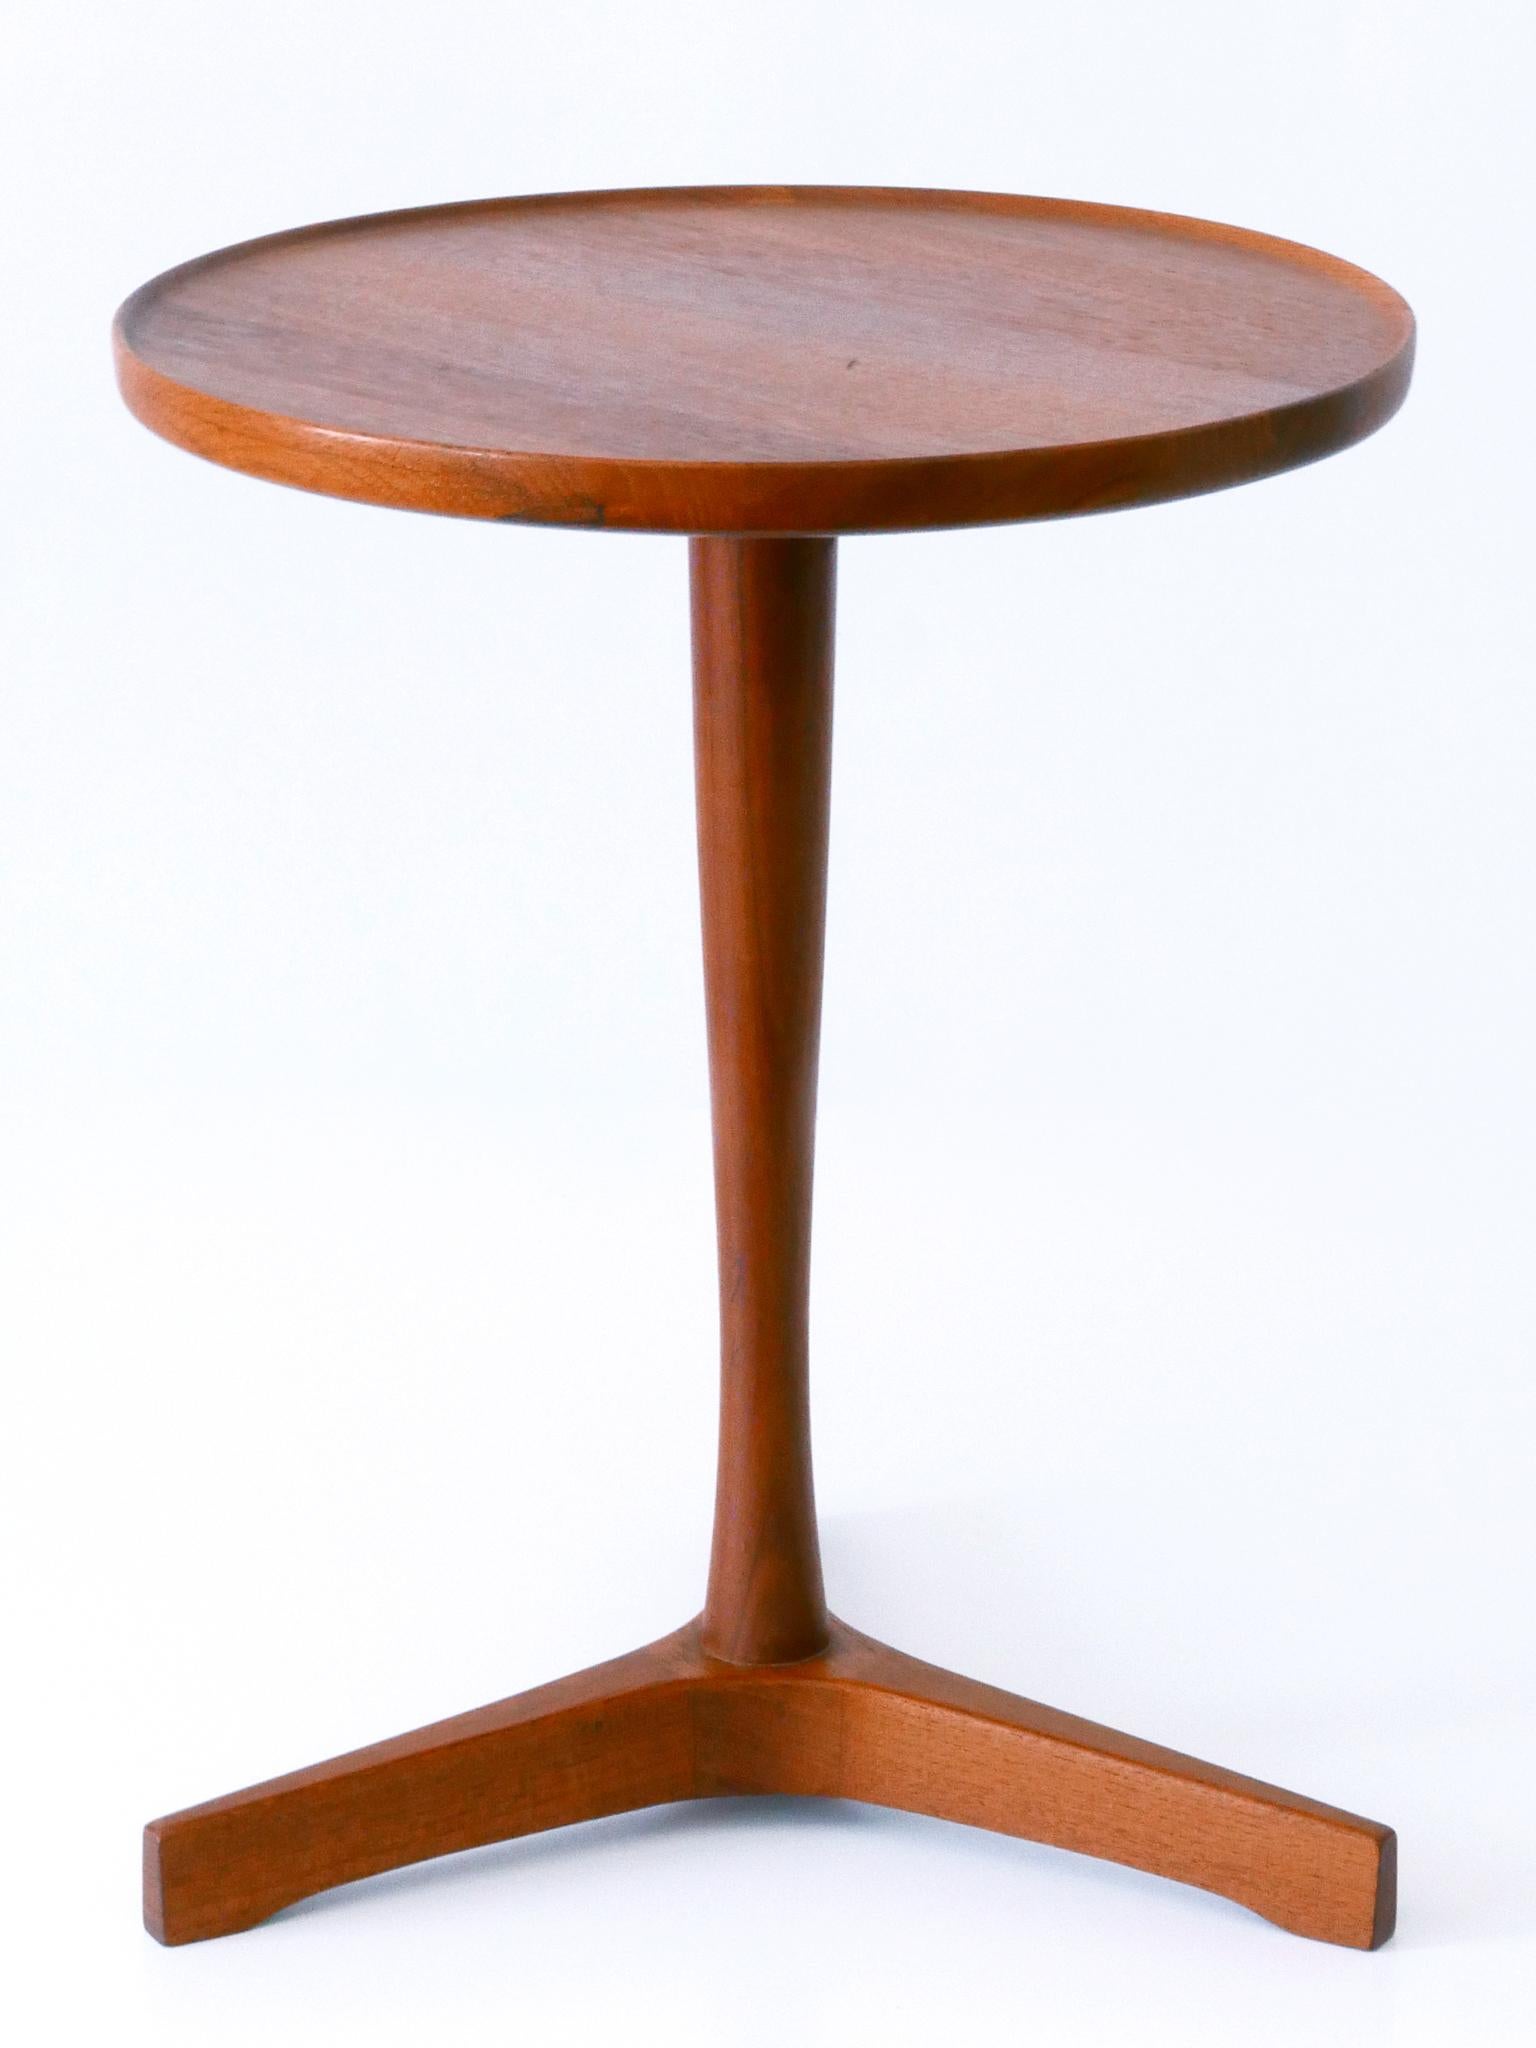 Elegant Mid-Century Modern Teak Side Table by Hans C. Andersen for Artek 1960s For Sale 2